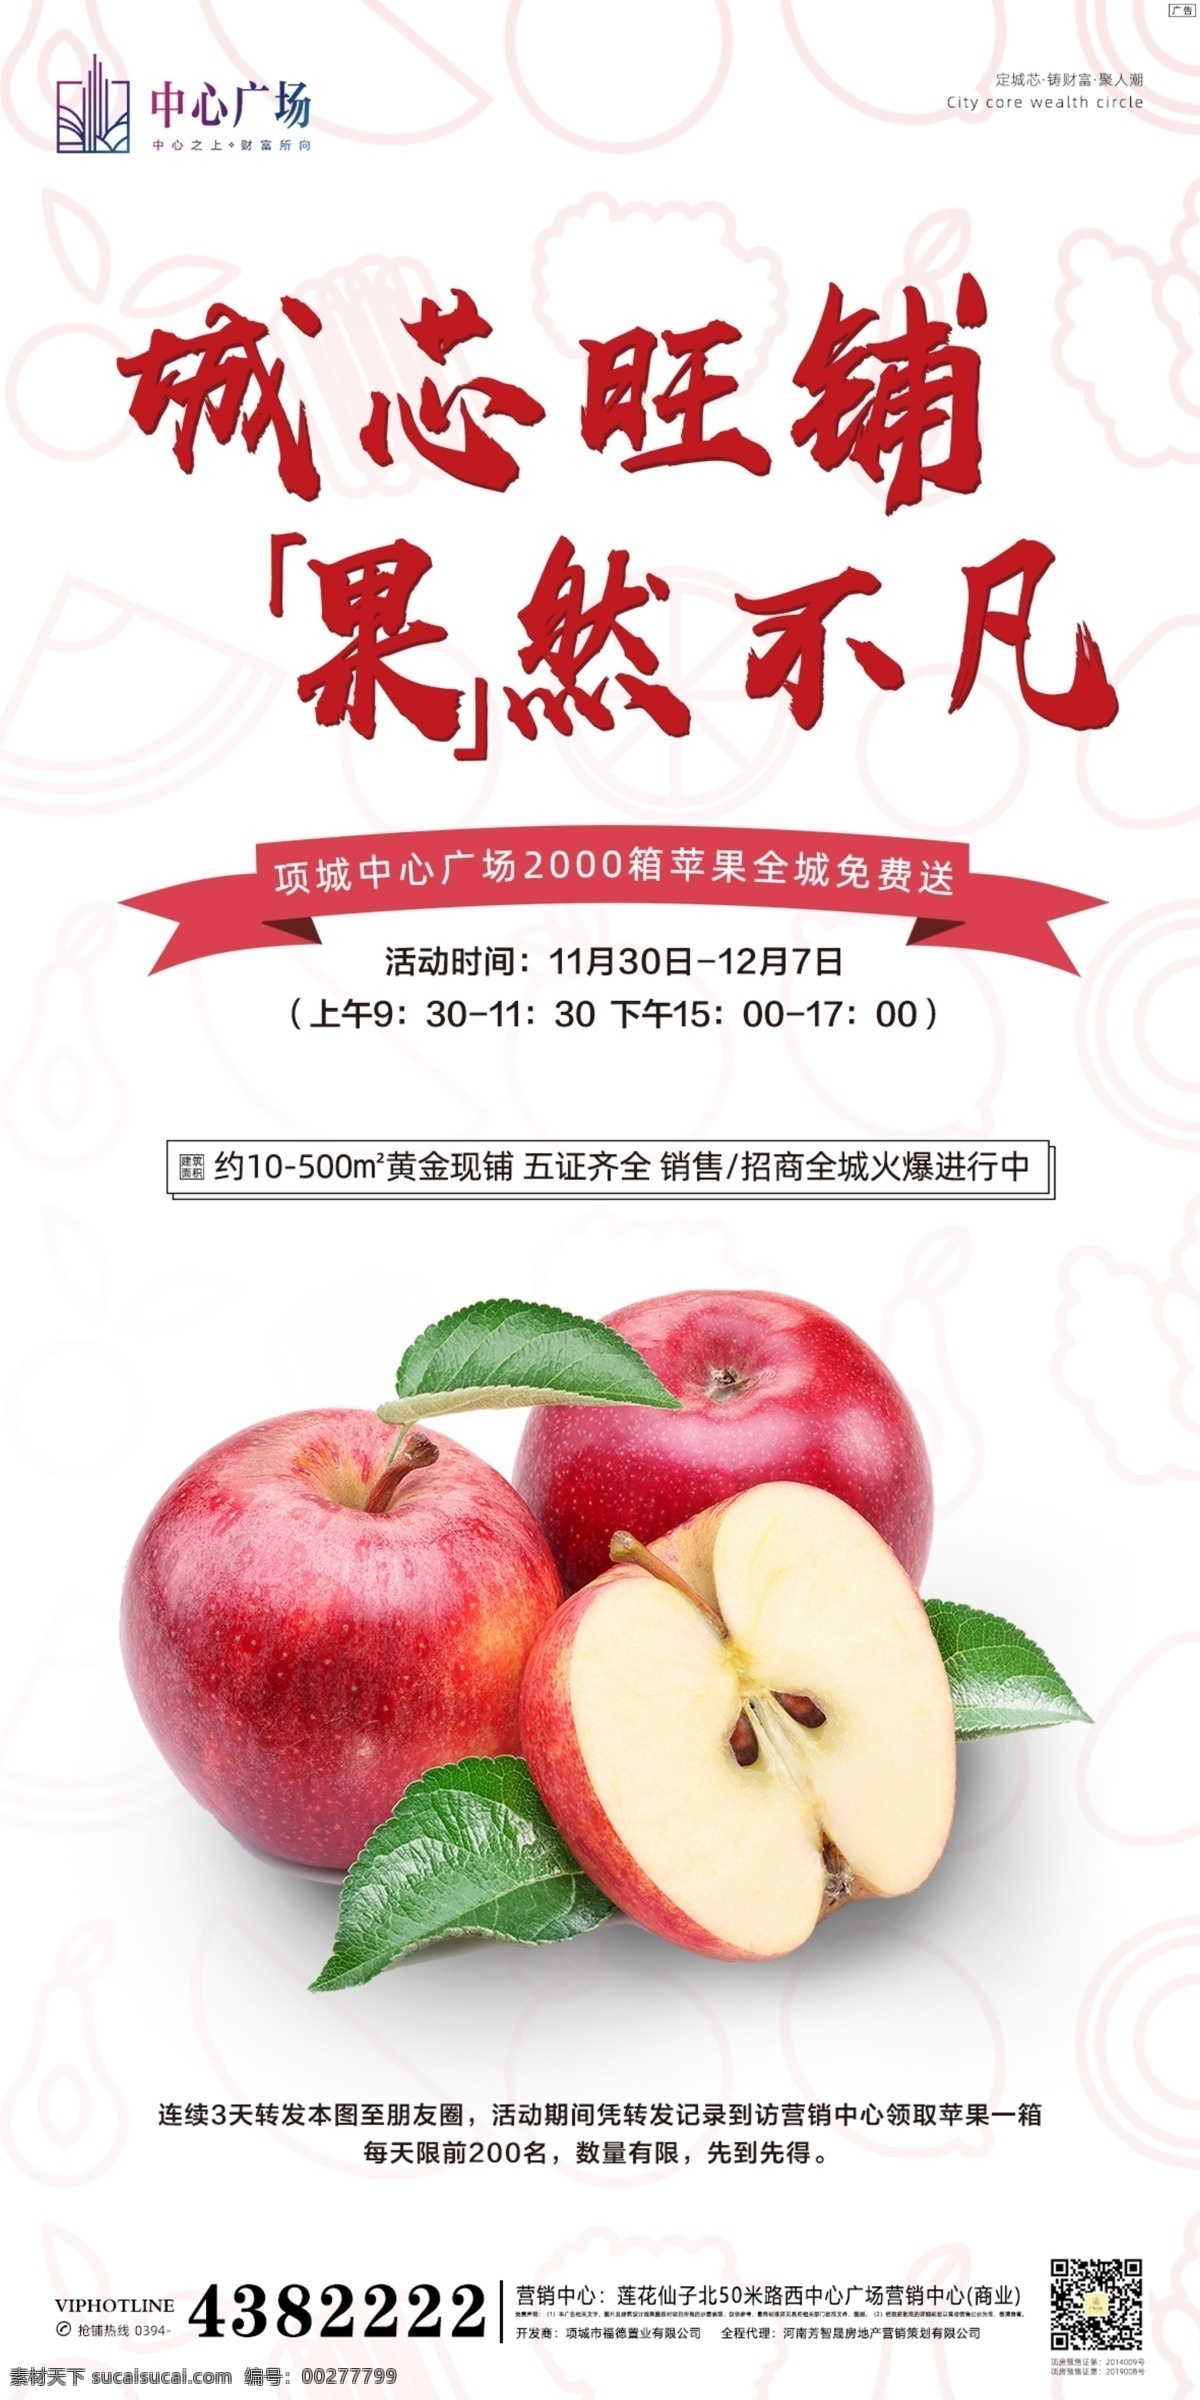 送 苹果 暖 场 单 图 送苹果 暖场 单图 微推 活动 地产 商业 水果 广告 地产暖场